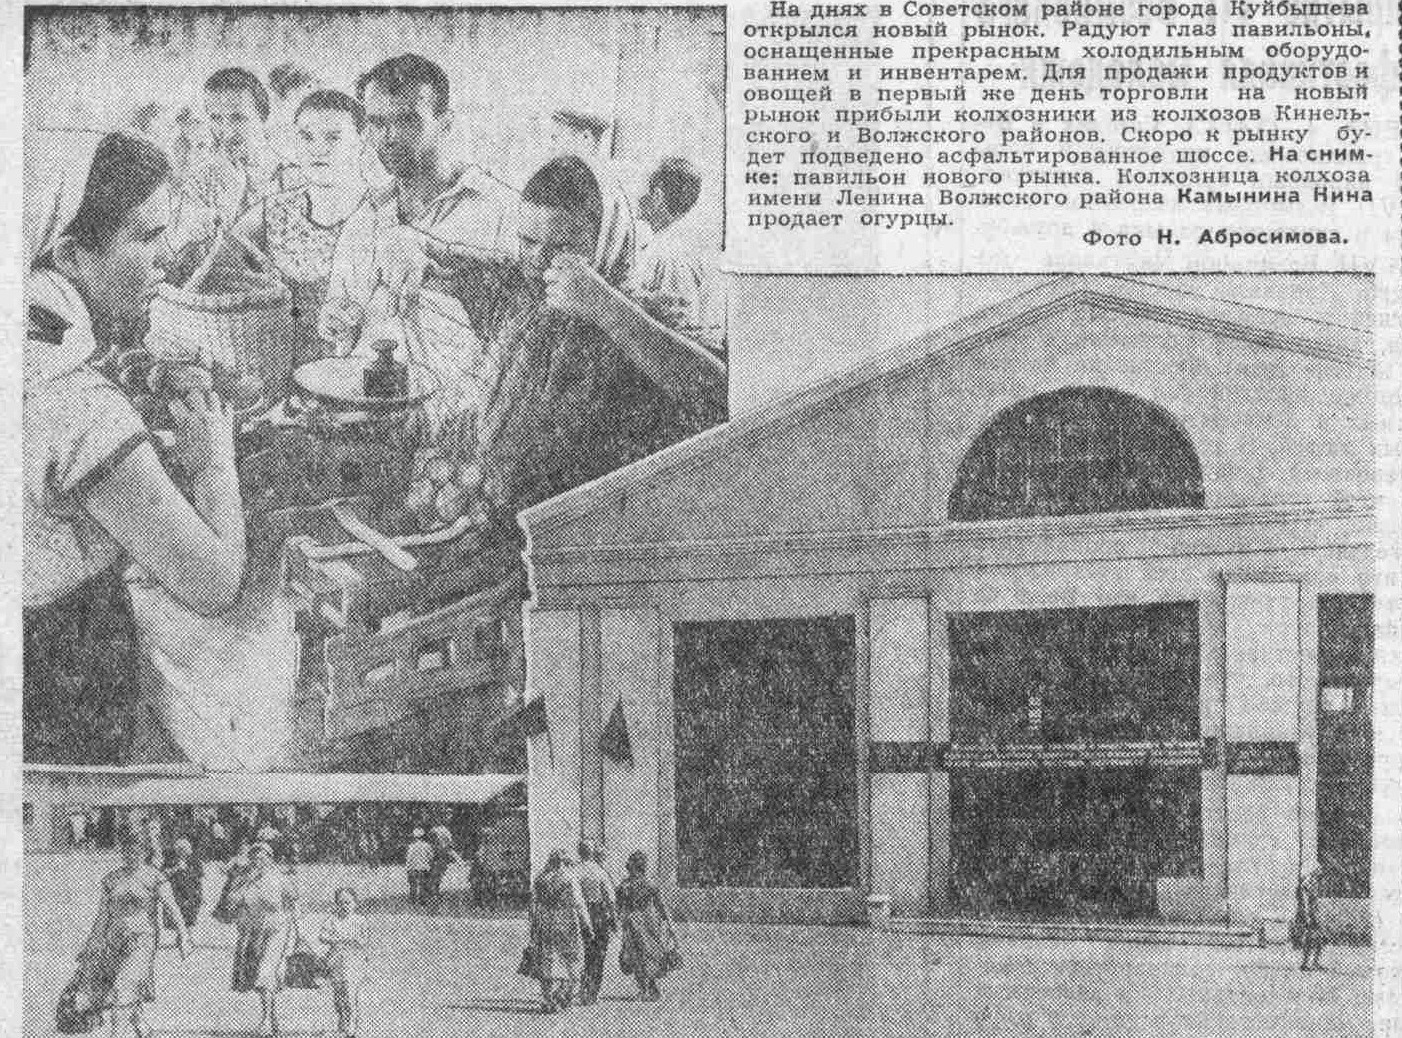 Запорожская-ФОТО-12-ВКа-1959-08-06-открытие рынка в Сов. р-не